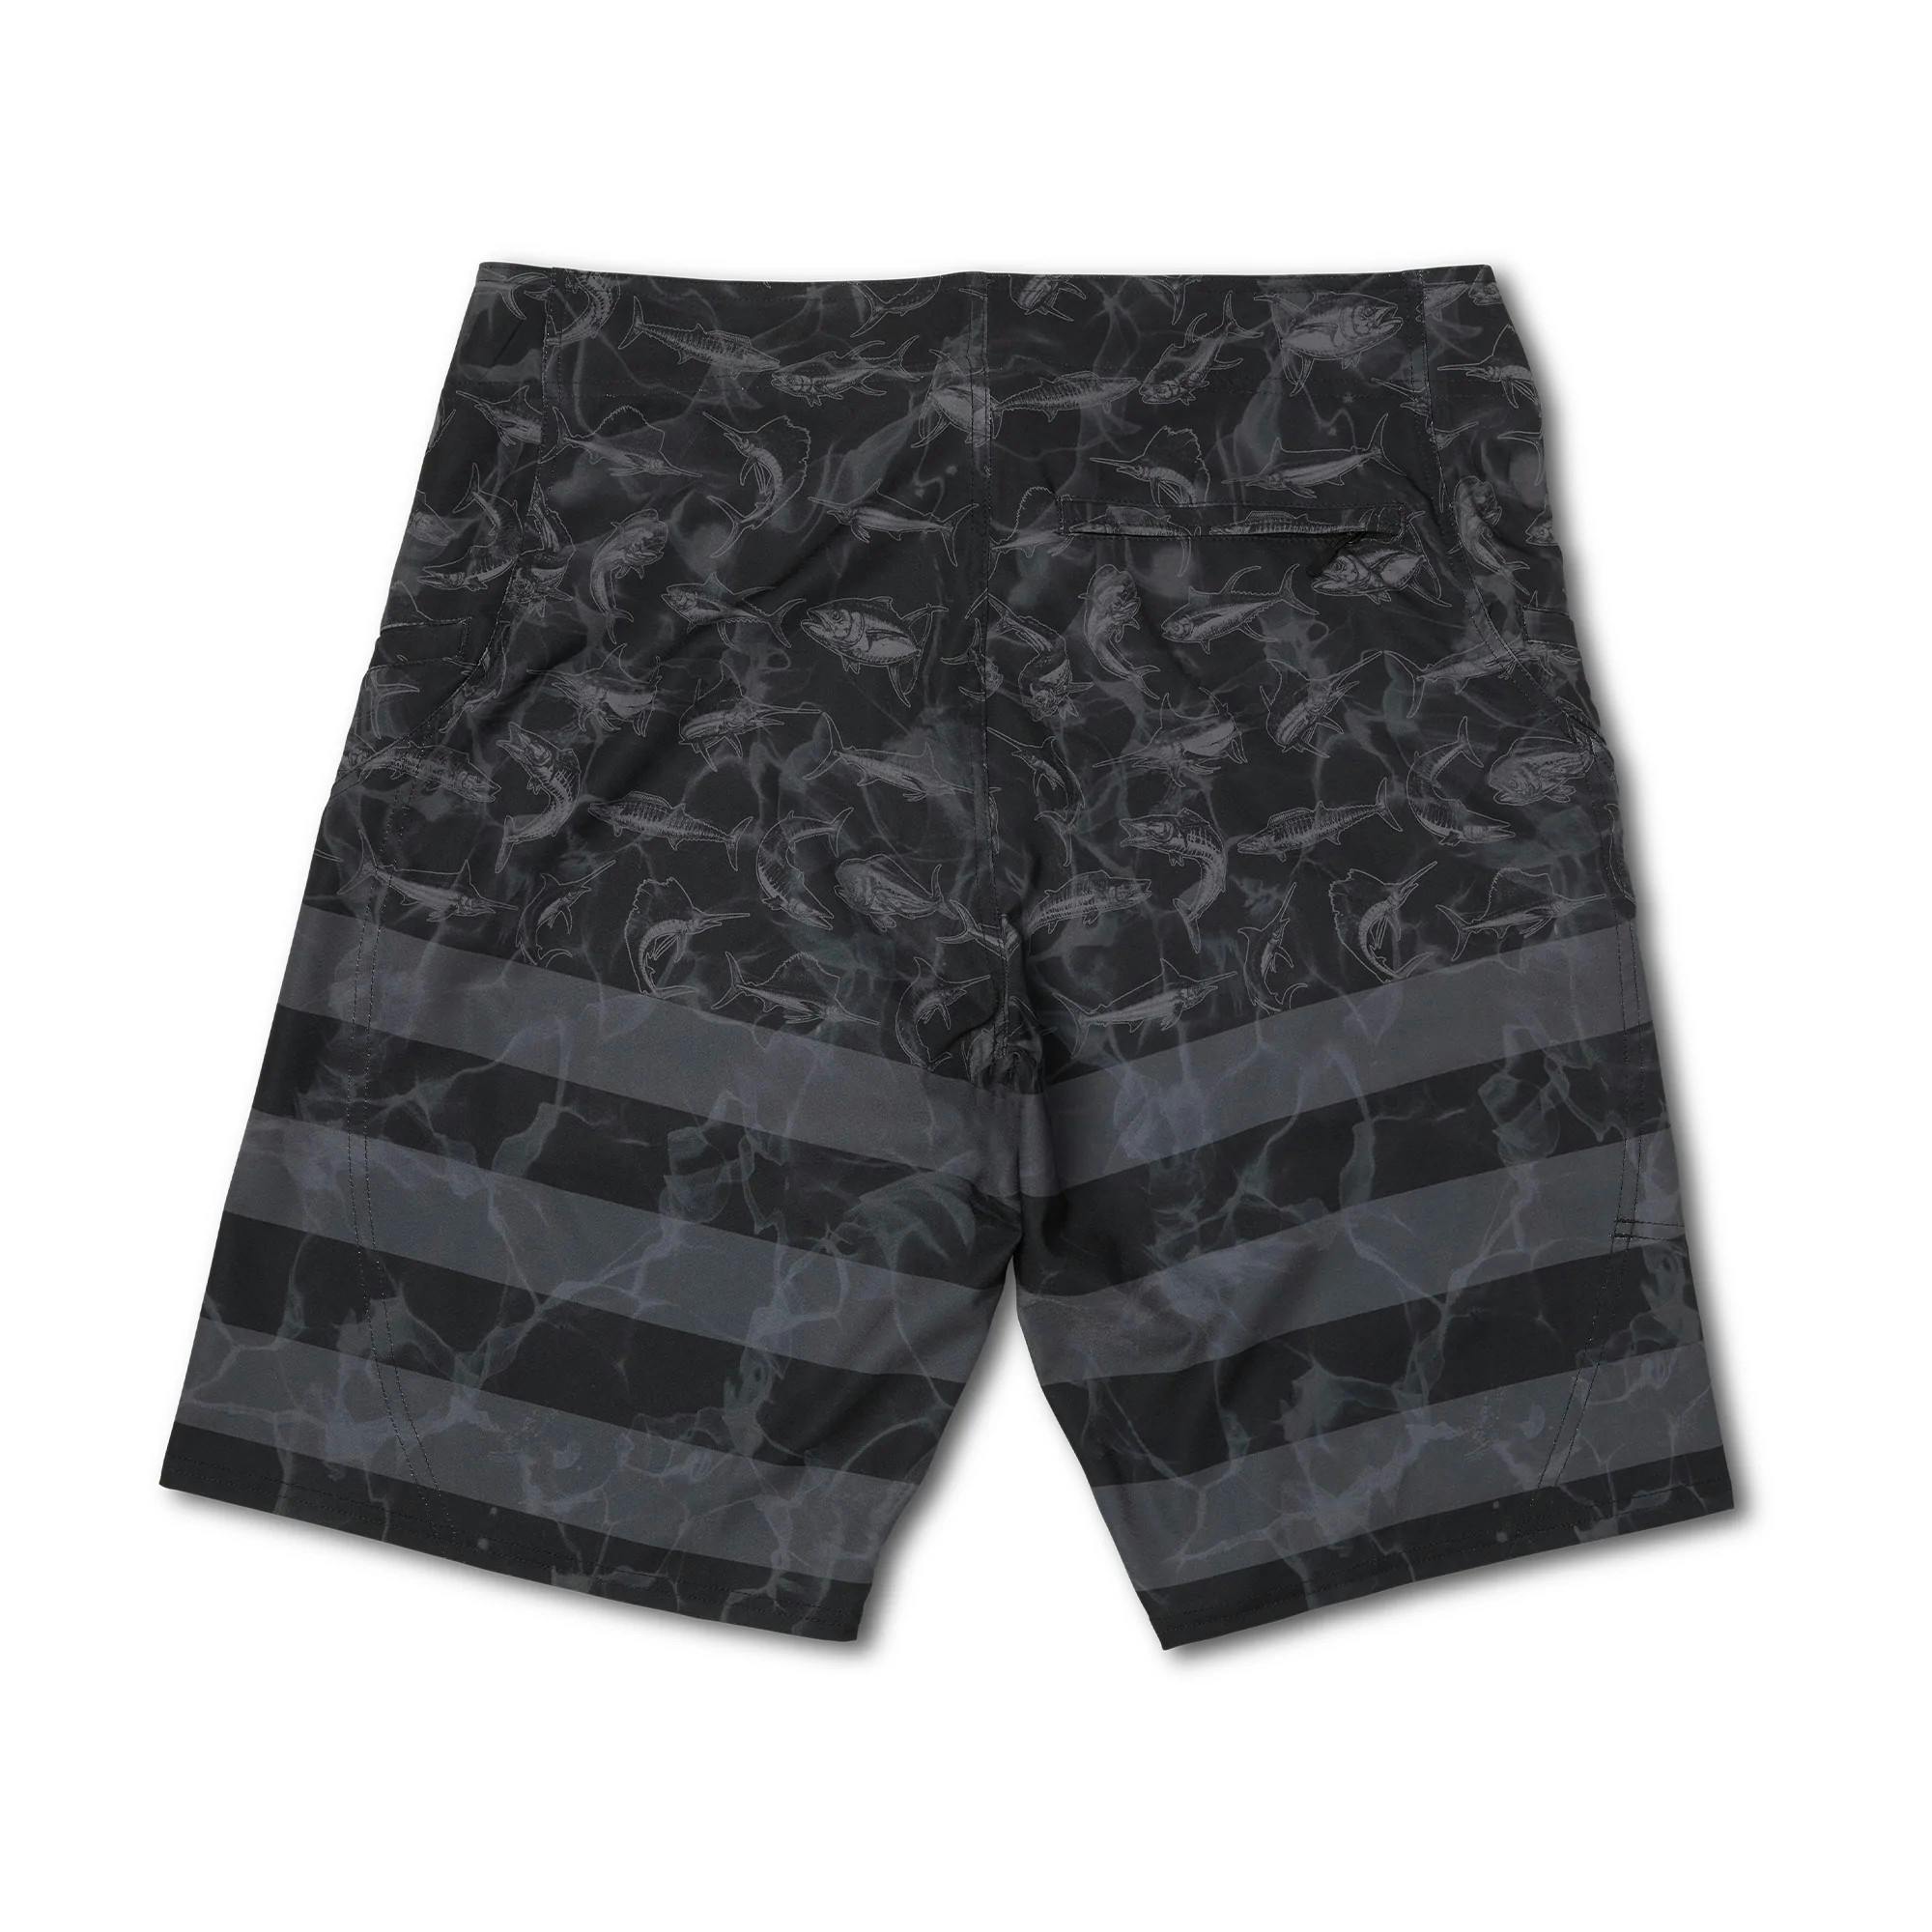 Pelagic Sharkskin Americamo Fishing Shorts (Men's) Black - Black